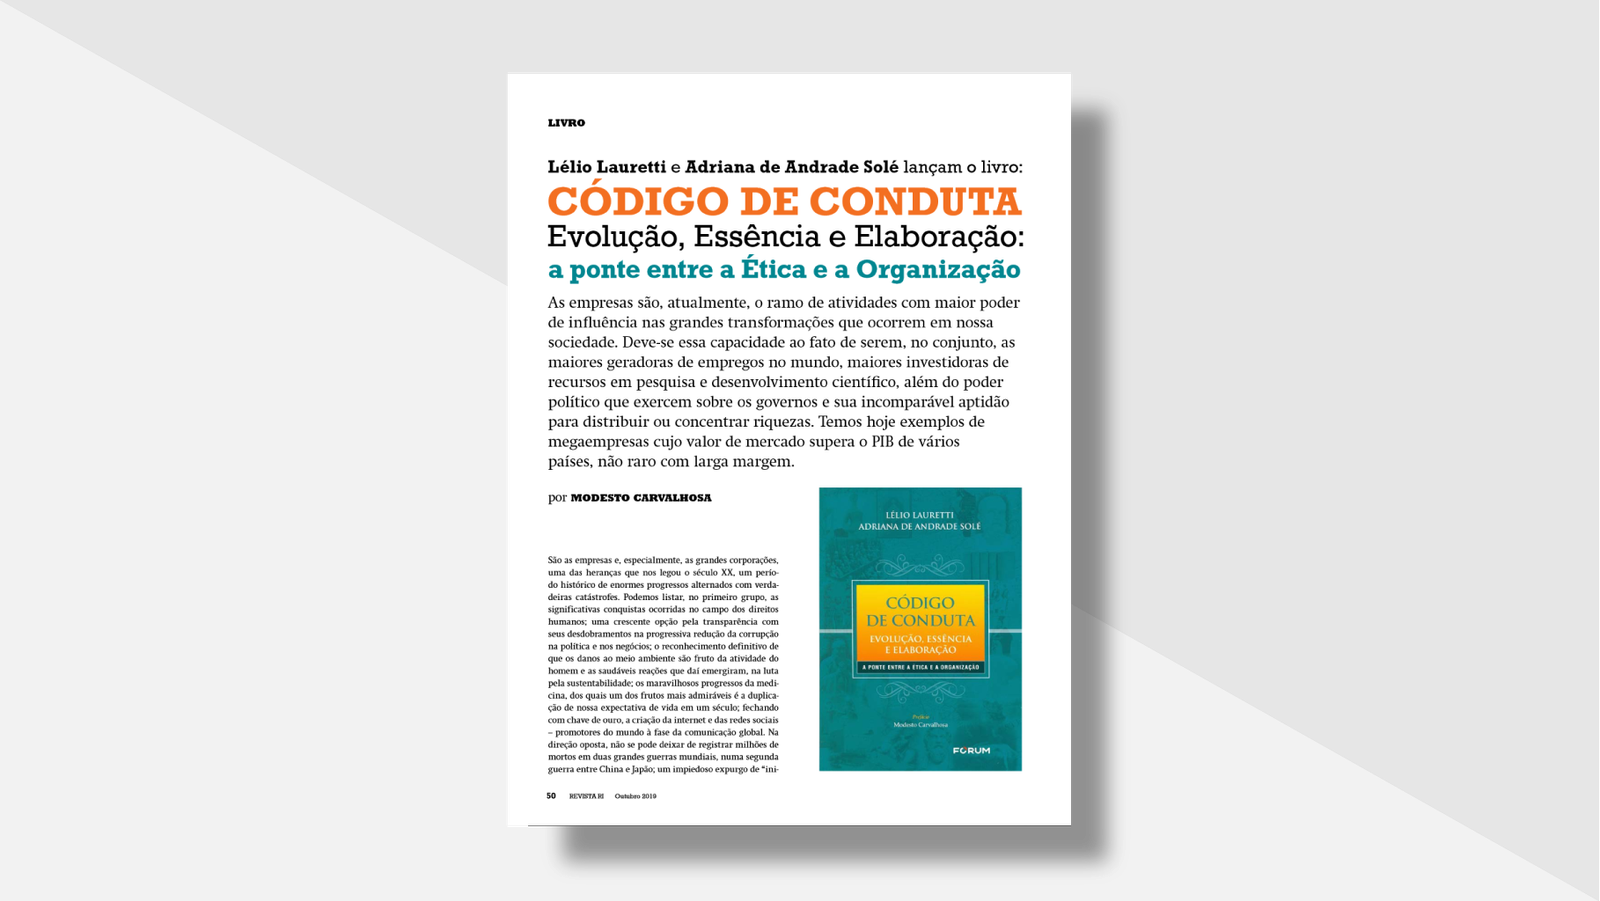 Artigo de Modesto Carvalhosa sobre o livro Código de Conduta: Evolução, Essência e Elaboração